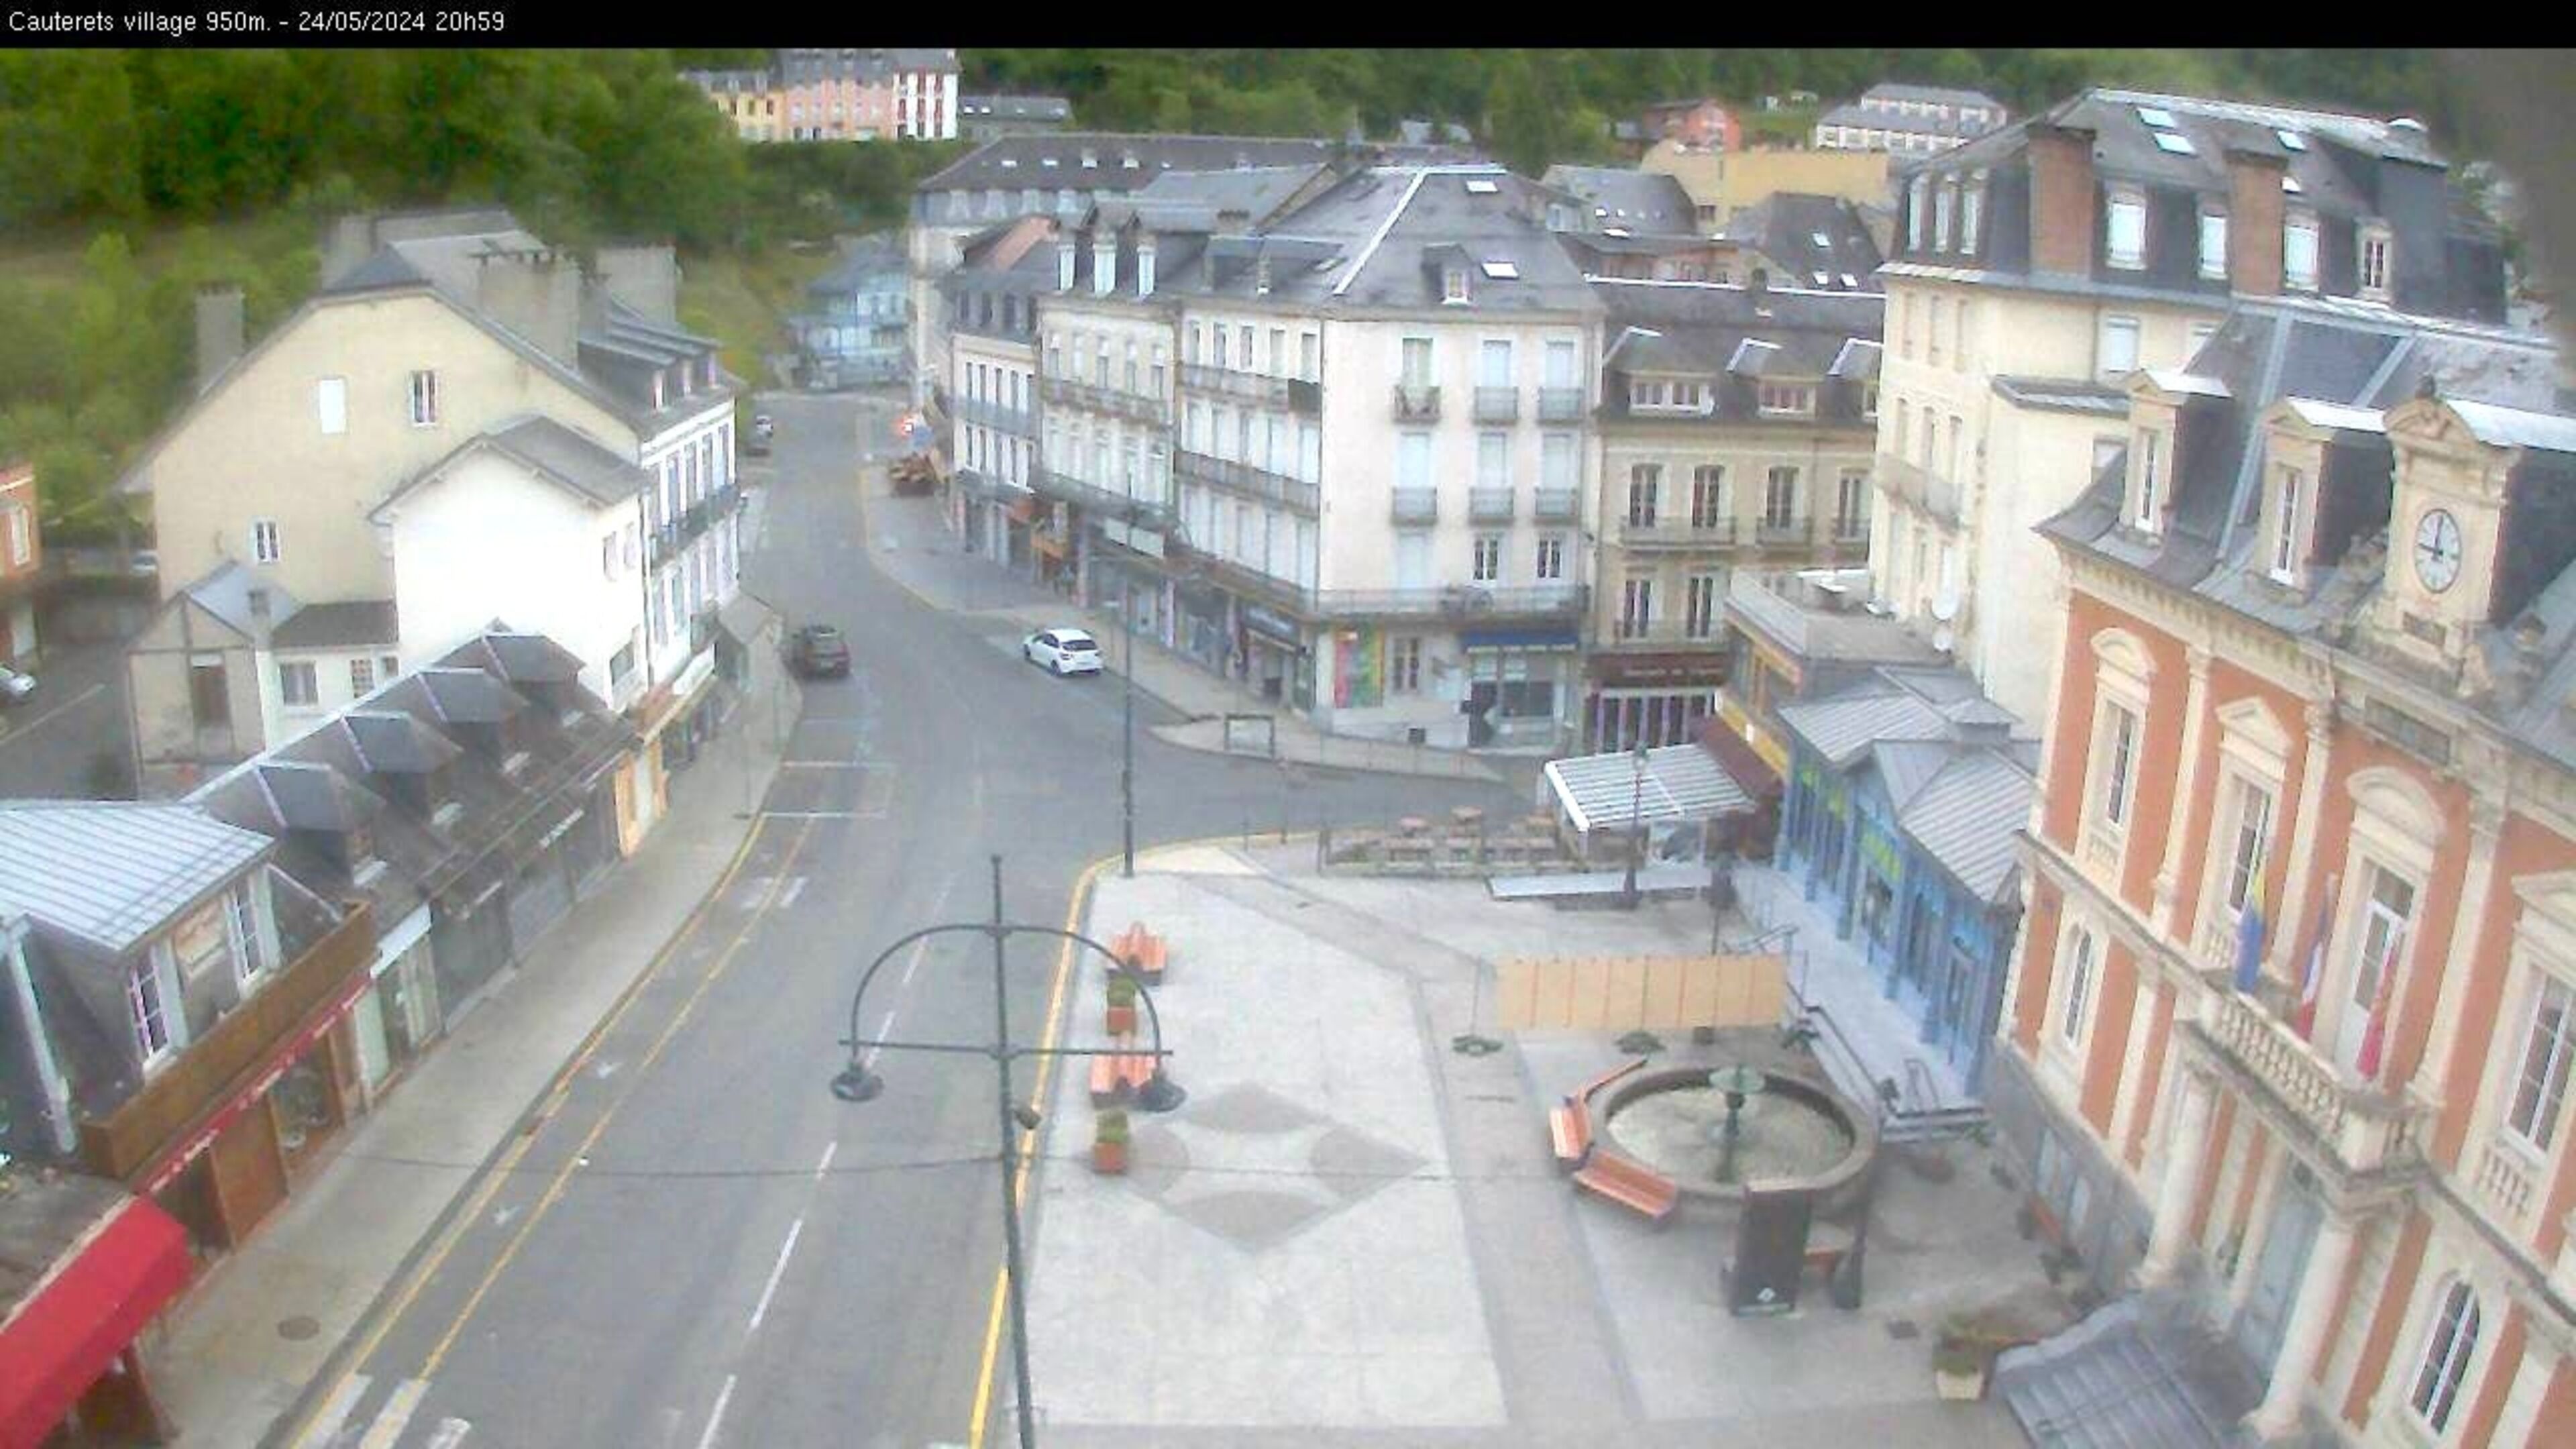 Webcam dans le village de Cauterets à 945 mètres d'altitude dans les Pyrénées. Vue sur la D920